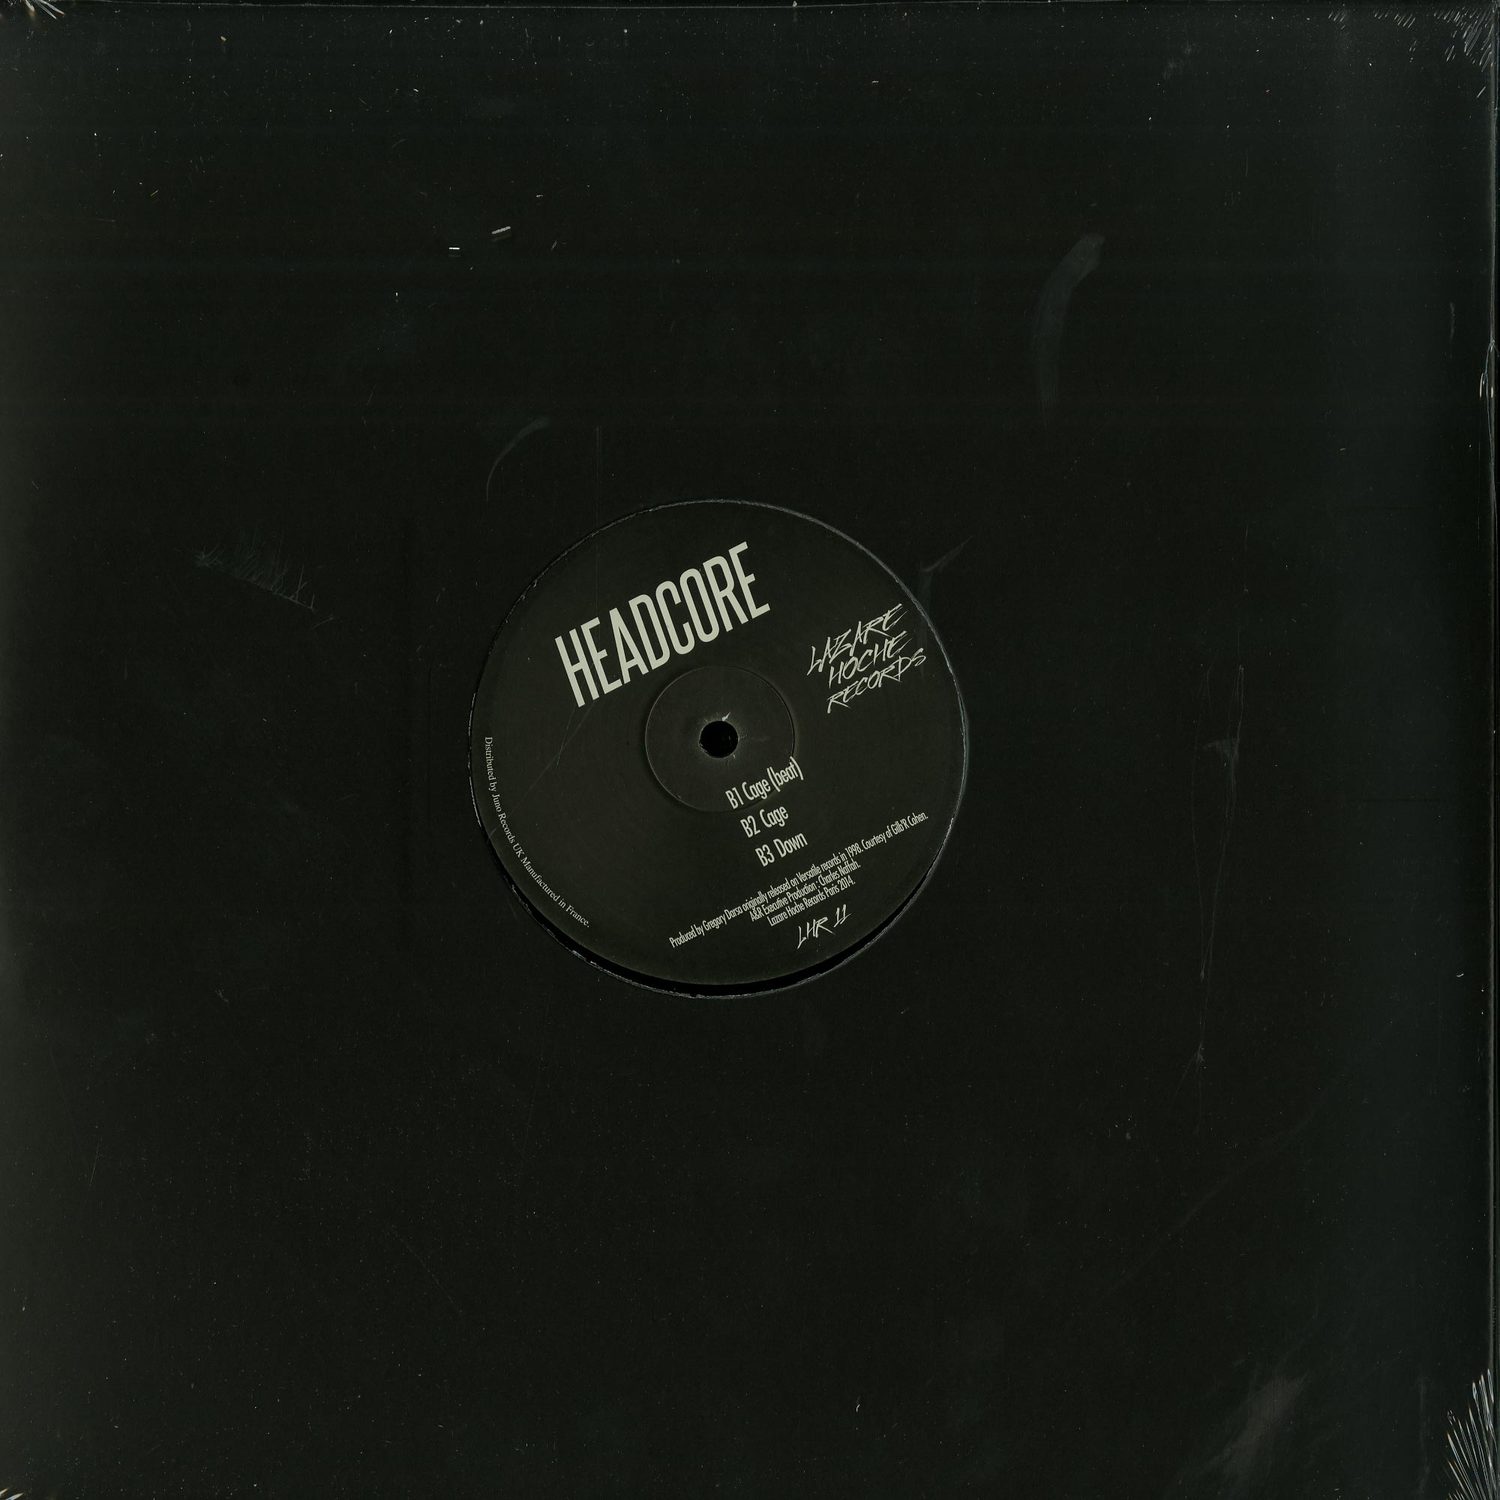 Headcore - HEADCORE EP 